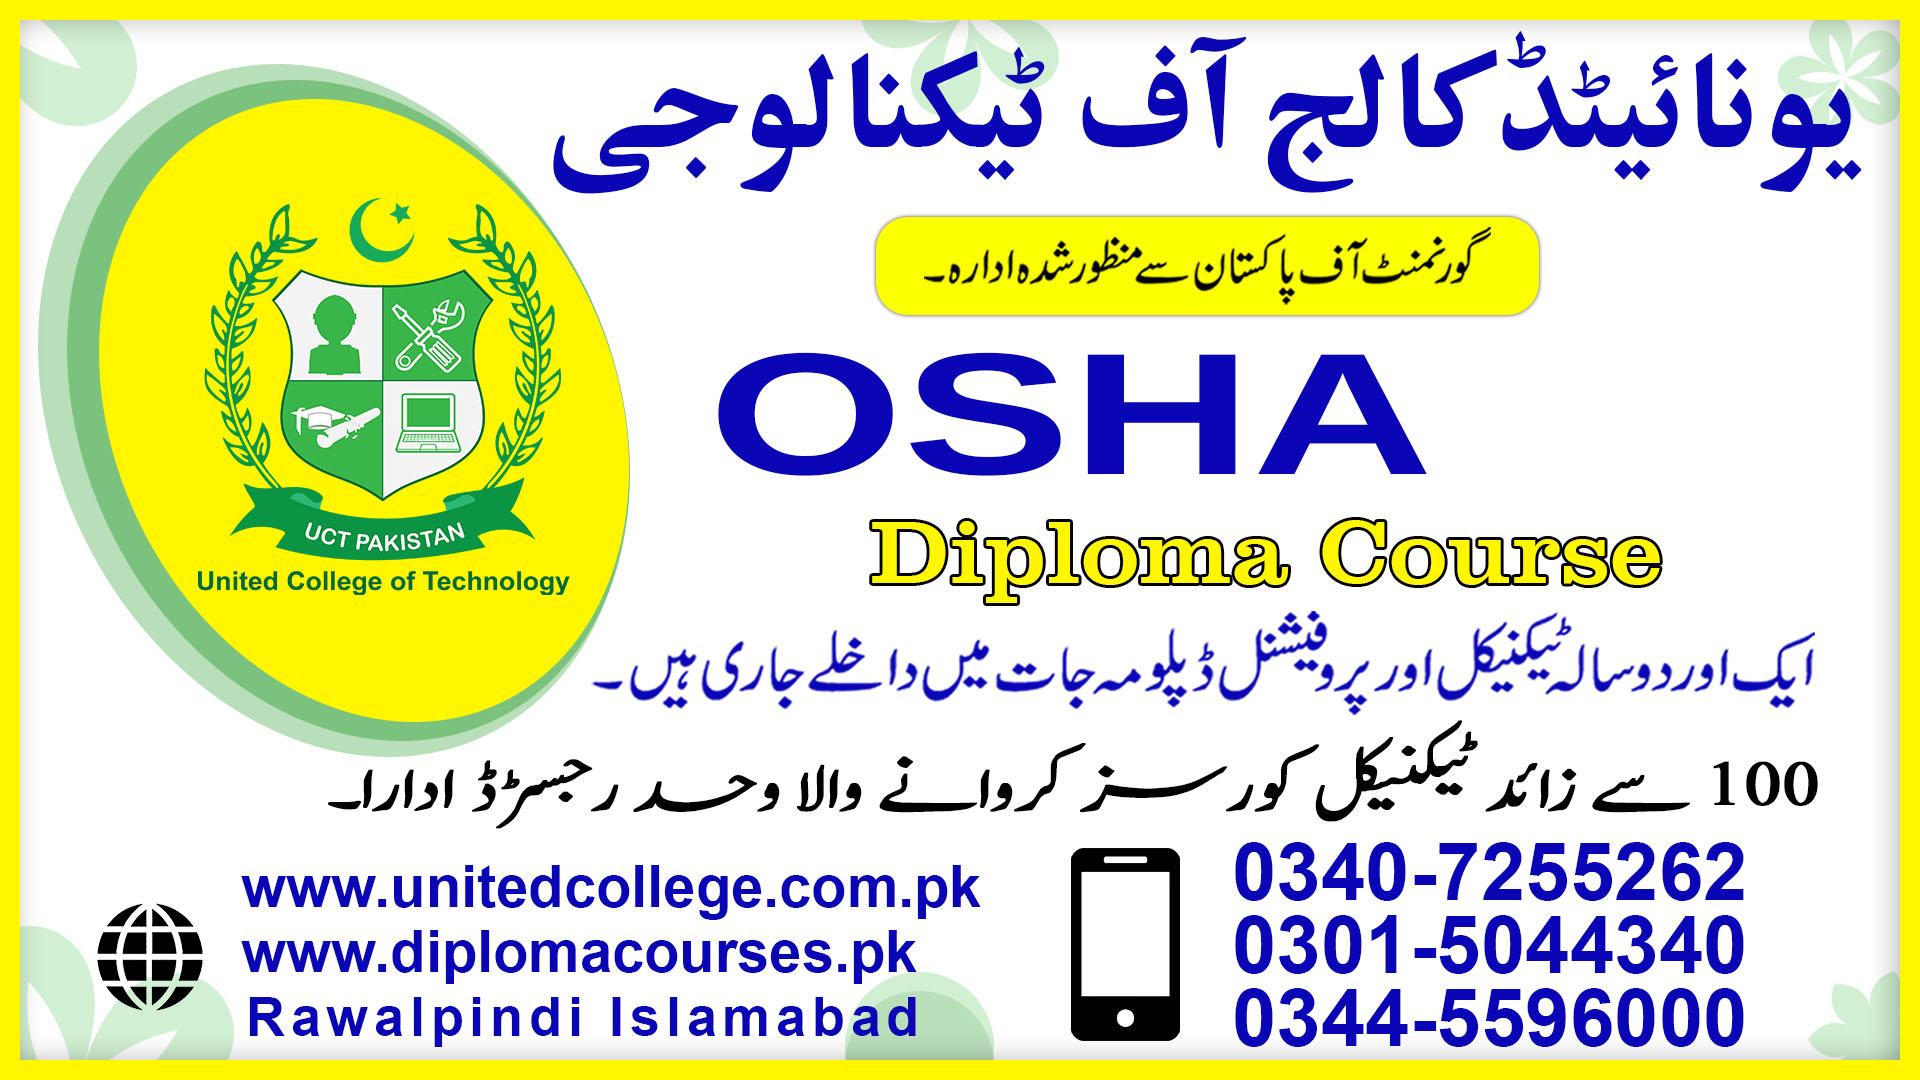 OSHA COURSE IN RAWALPINDI ISLAMABAD PAKISTAN